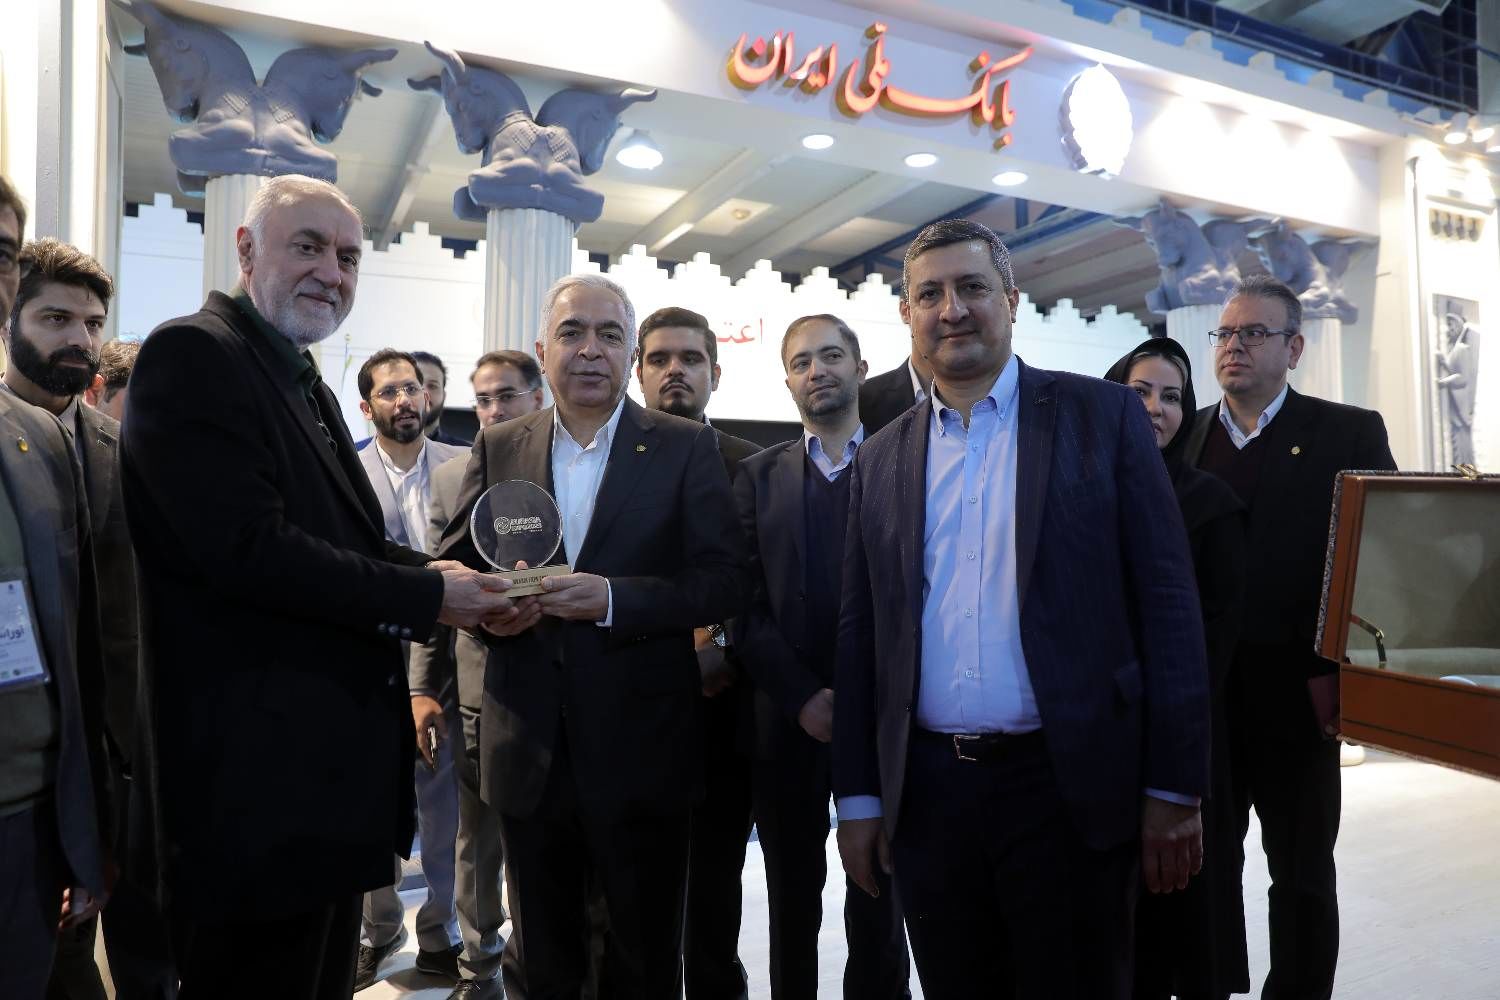  بانک ملی ایران در توسعه اقتصادی کشور نقش بسزایی دارد